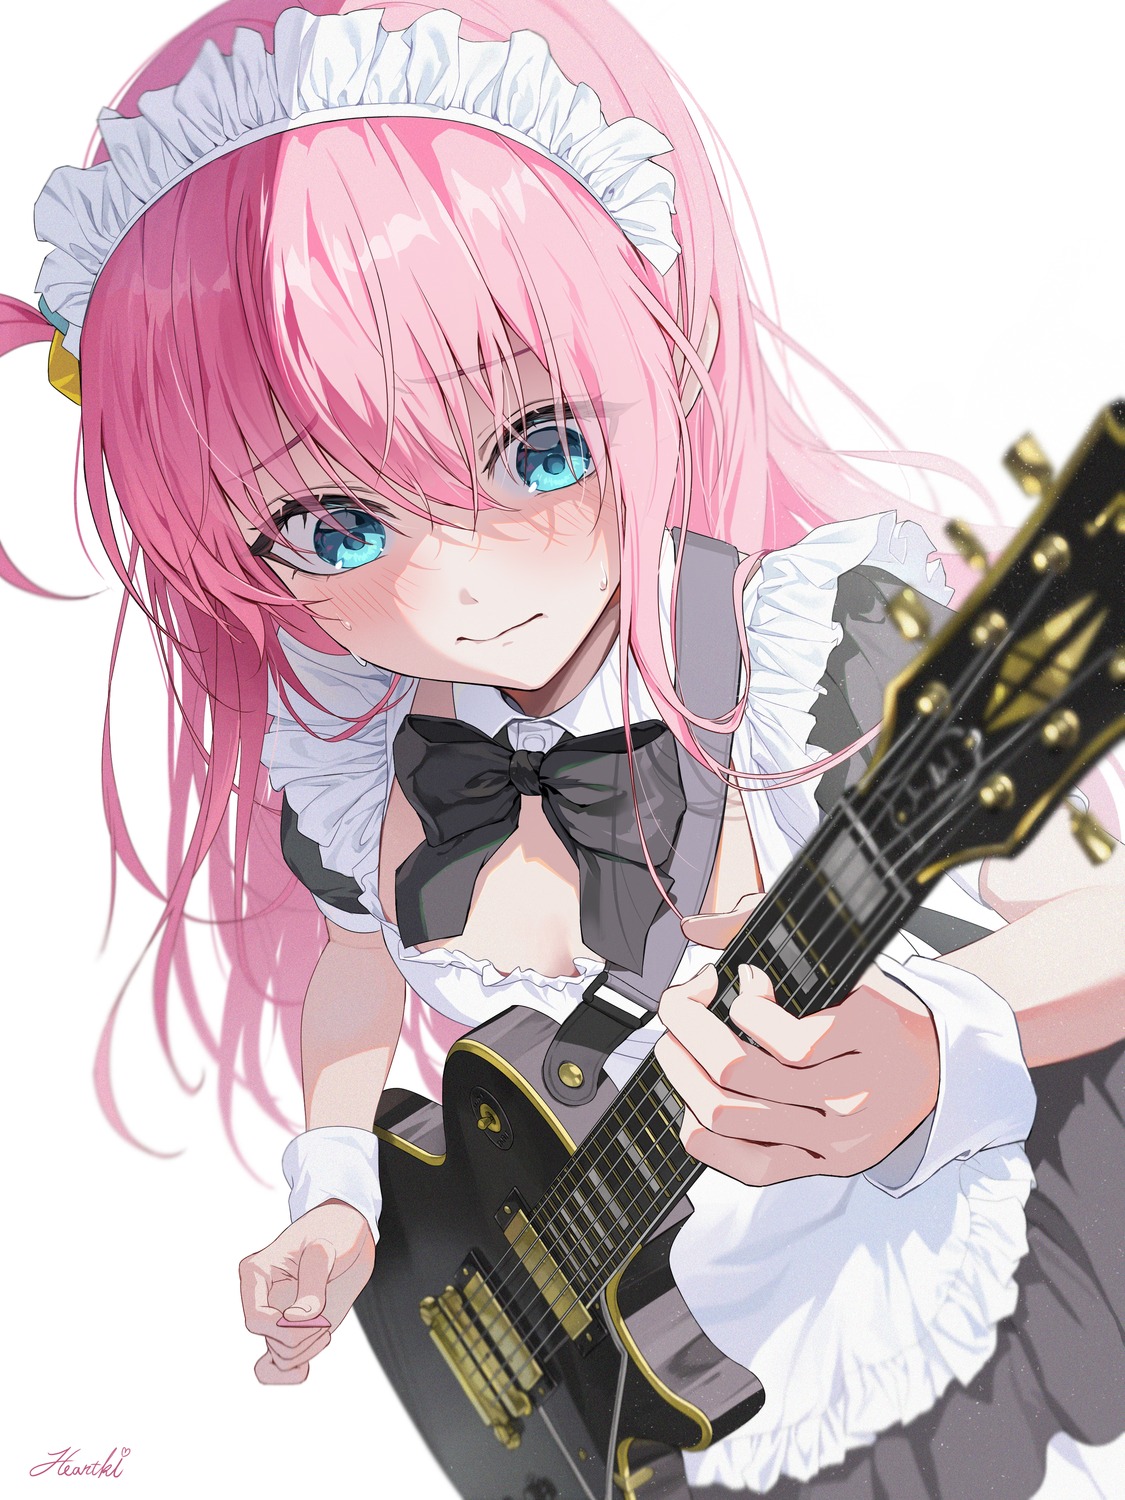 bocchi_the_rock! gotou_hitori guitar heartki maid no_bra